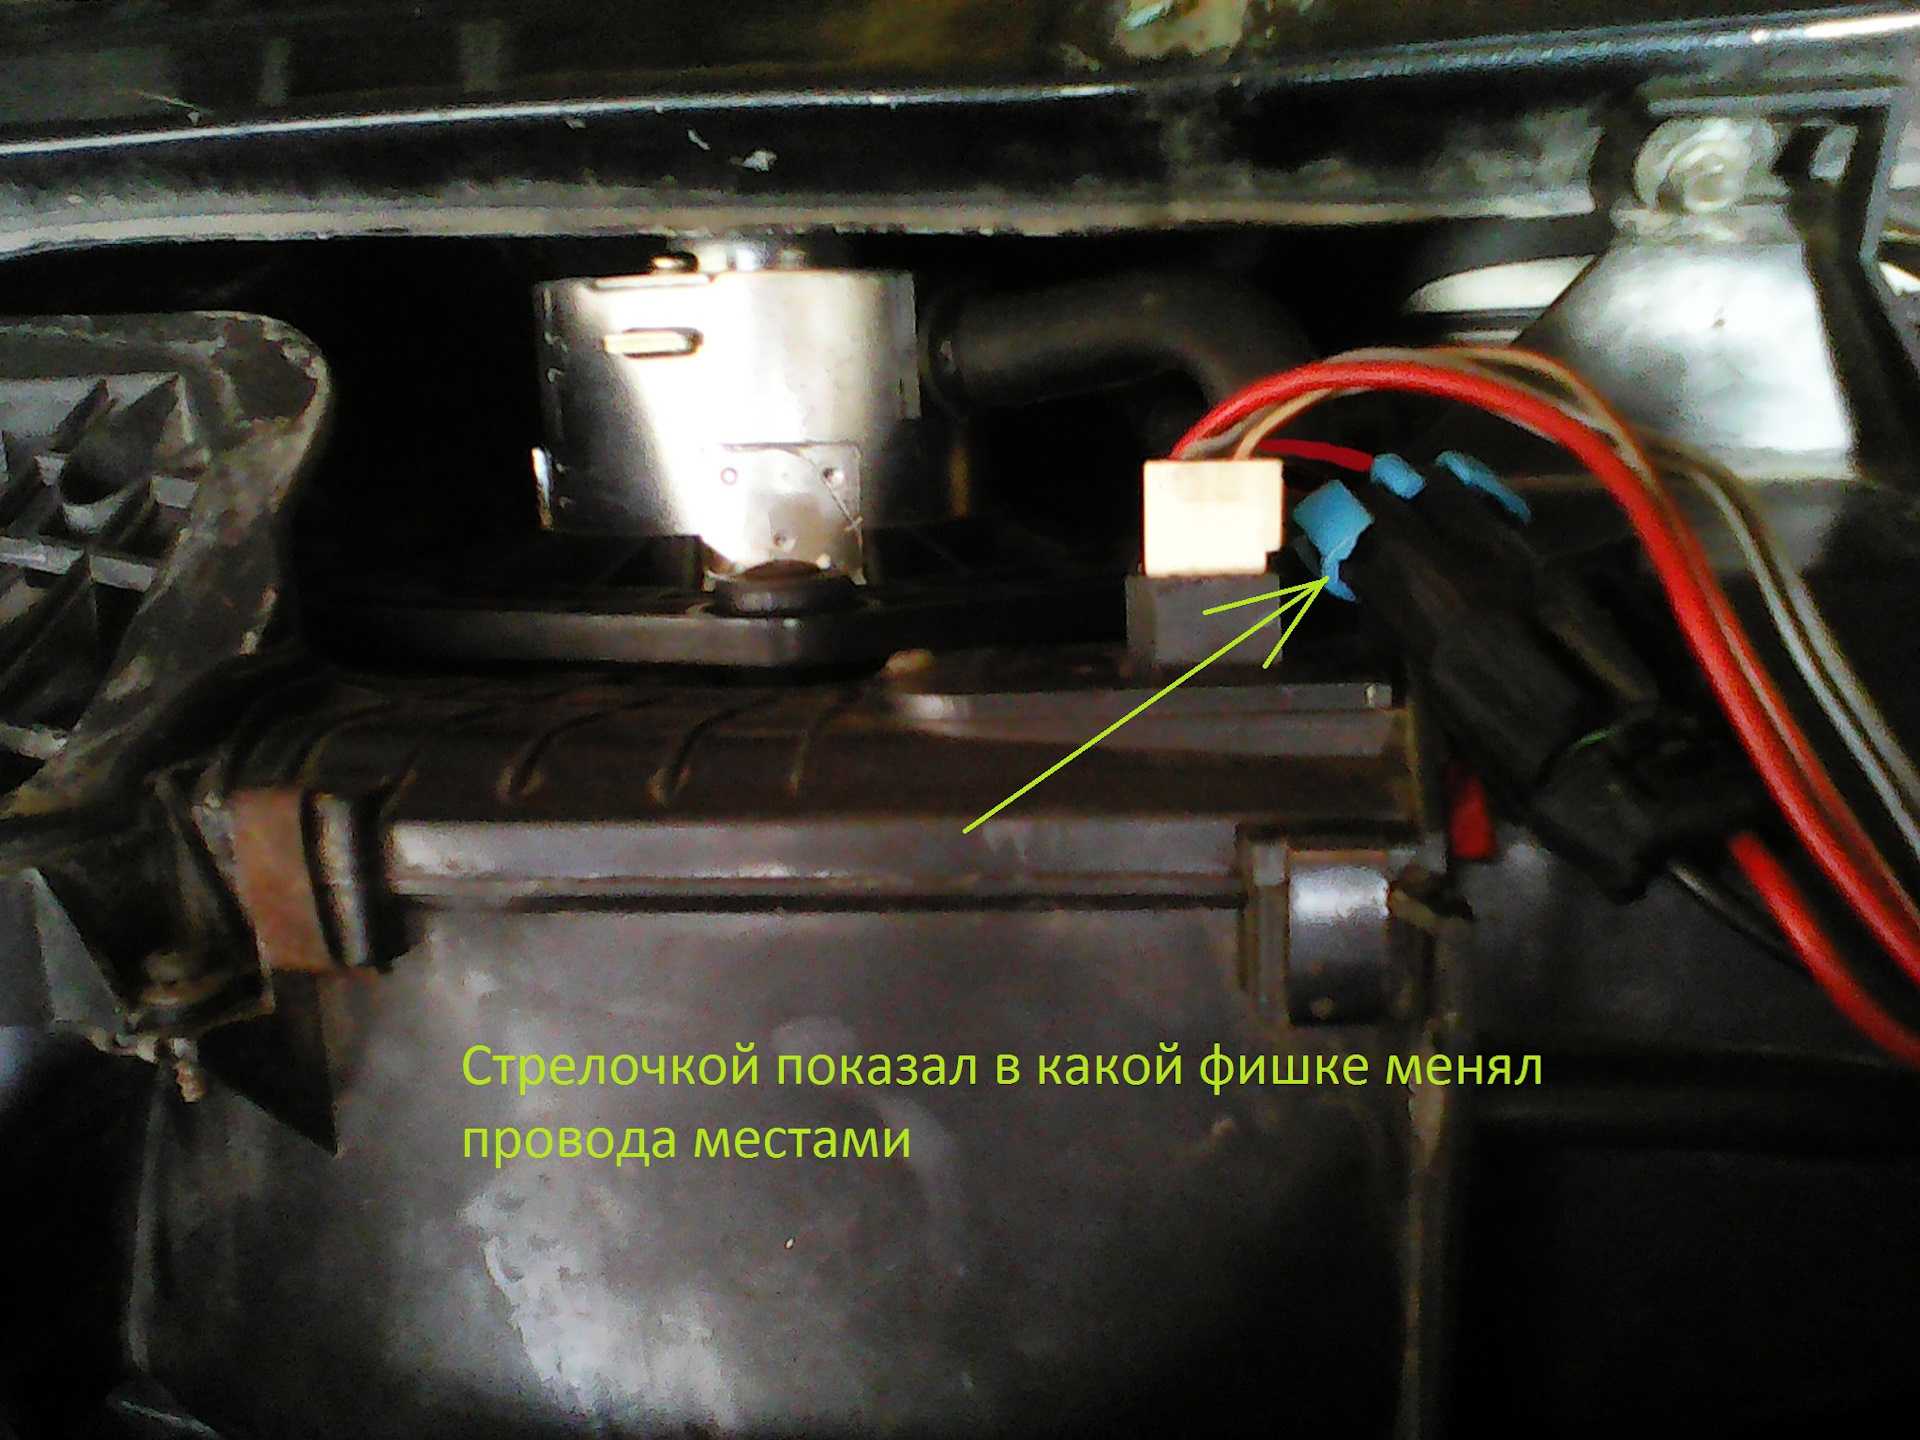 Замена моторедуктора печки ваз 2112 16 клапанов – защита имущества